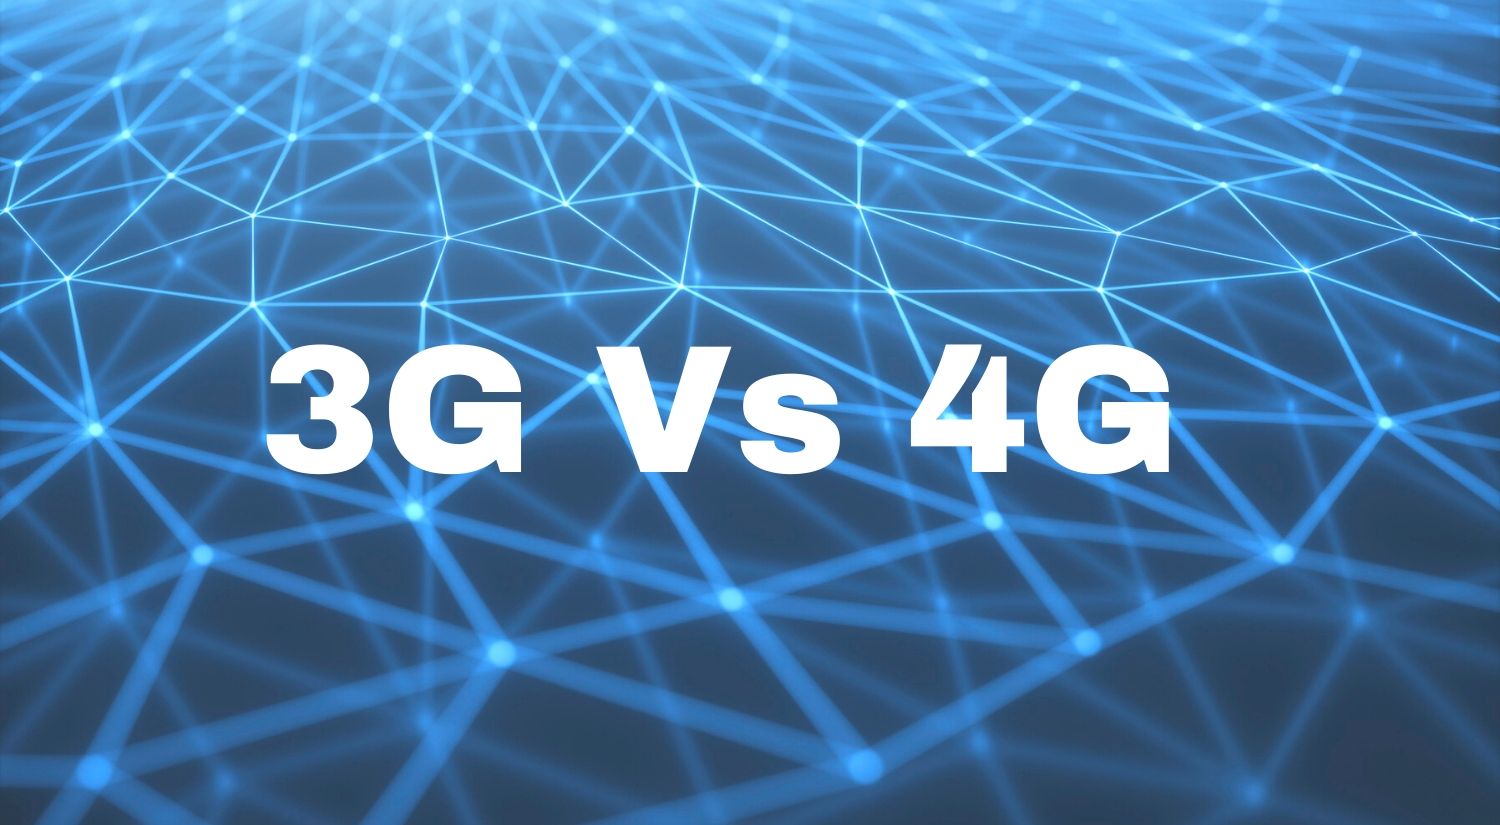 3G vs 4G mobile network